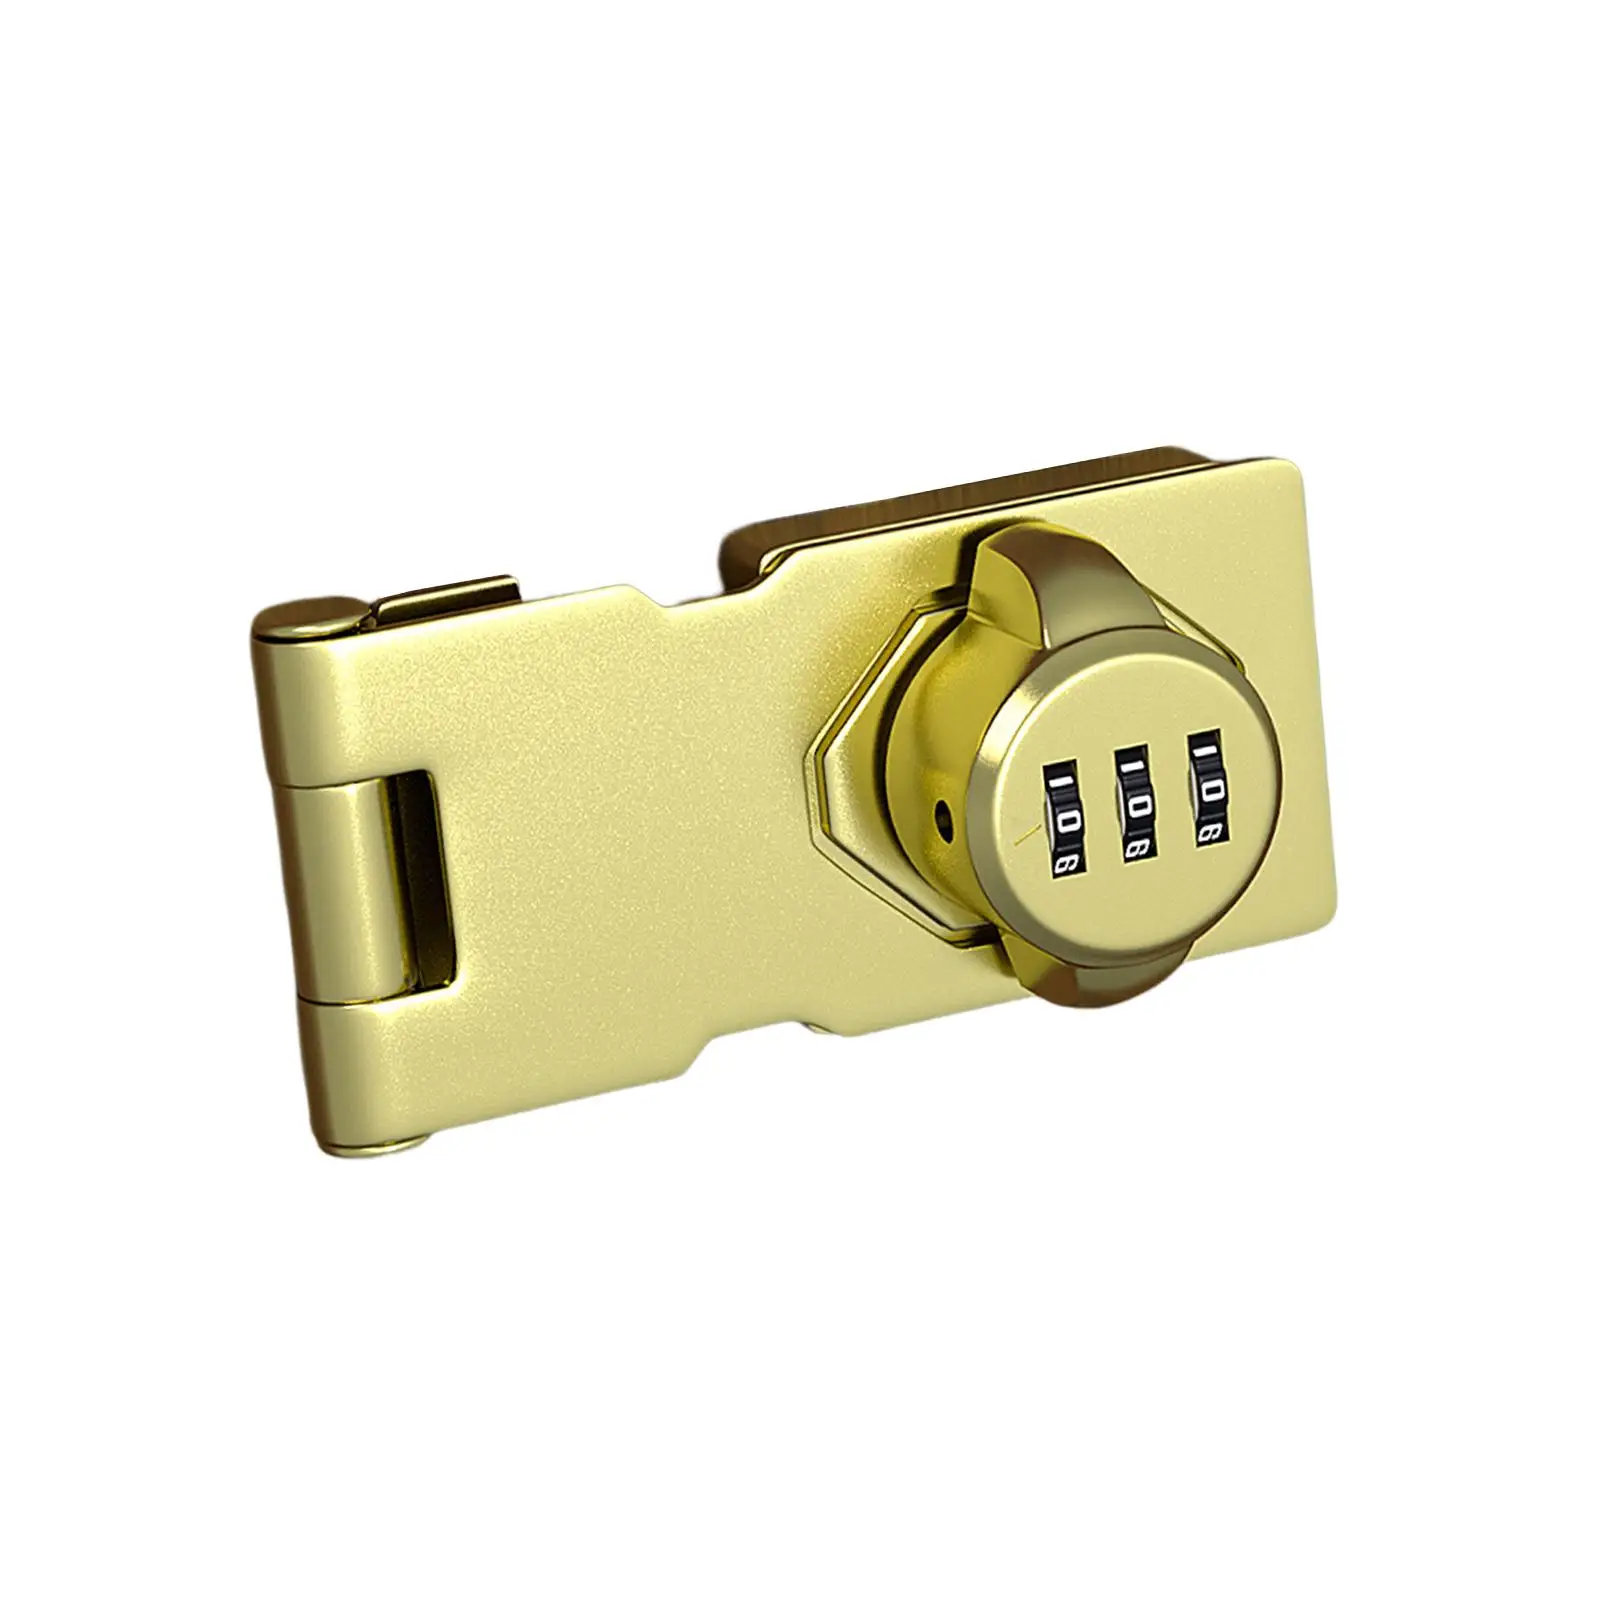 Mechanical Password Door Lock Cabinet Password Hasp Lock, 3 Digit Rotary Hasp Lock Drawer Lock for Small Doors Garden Bathroom